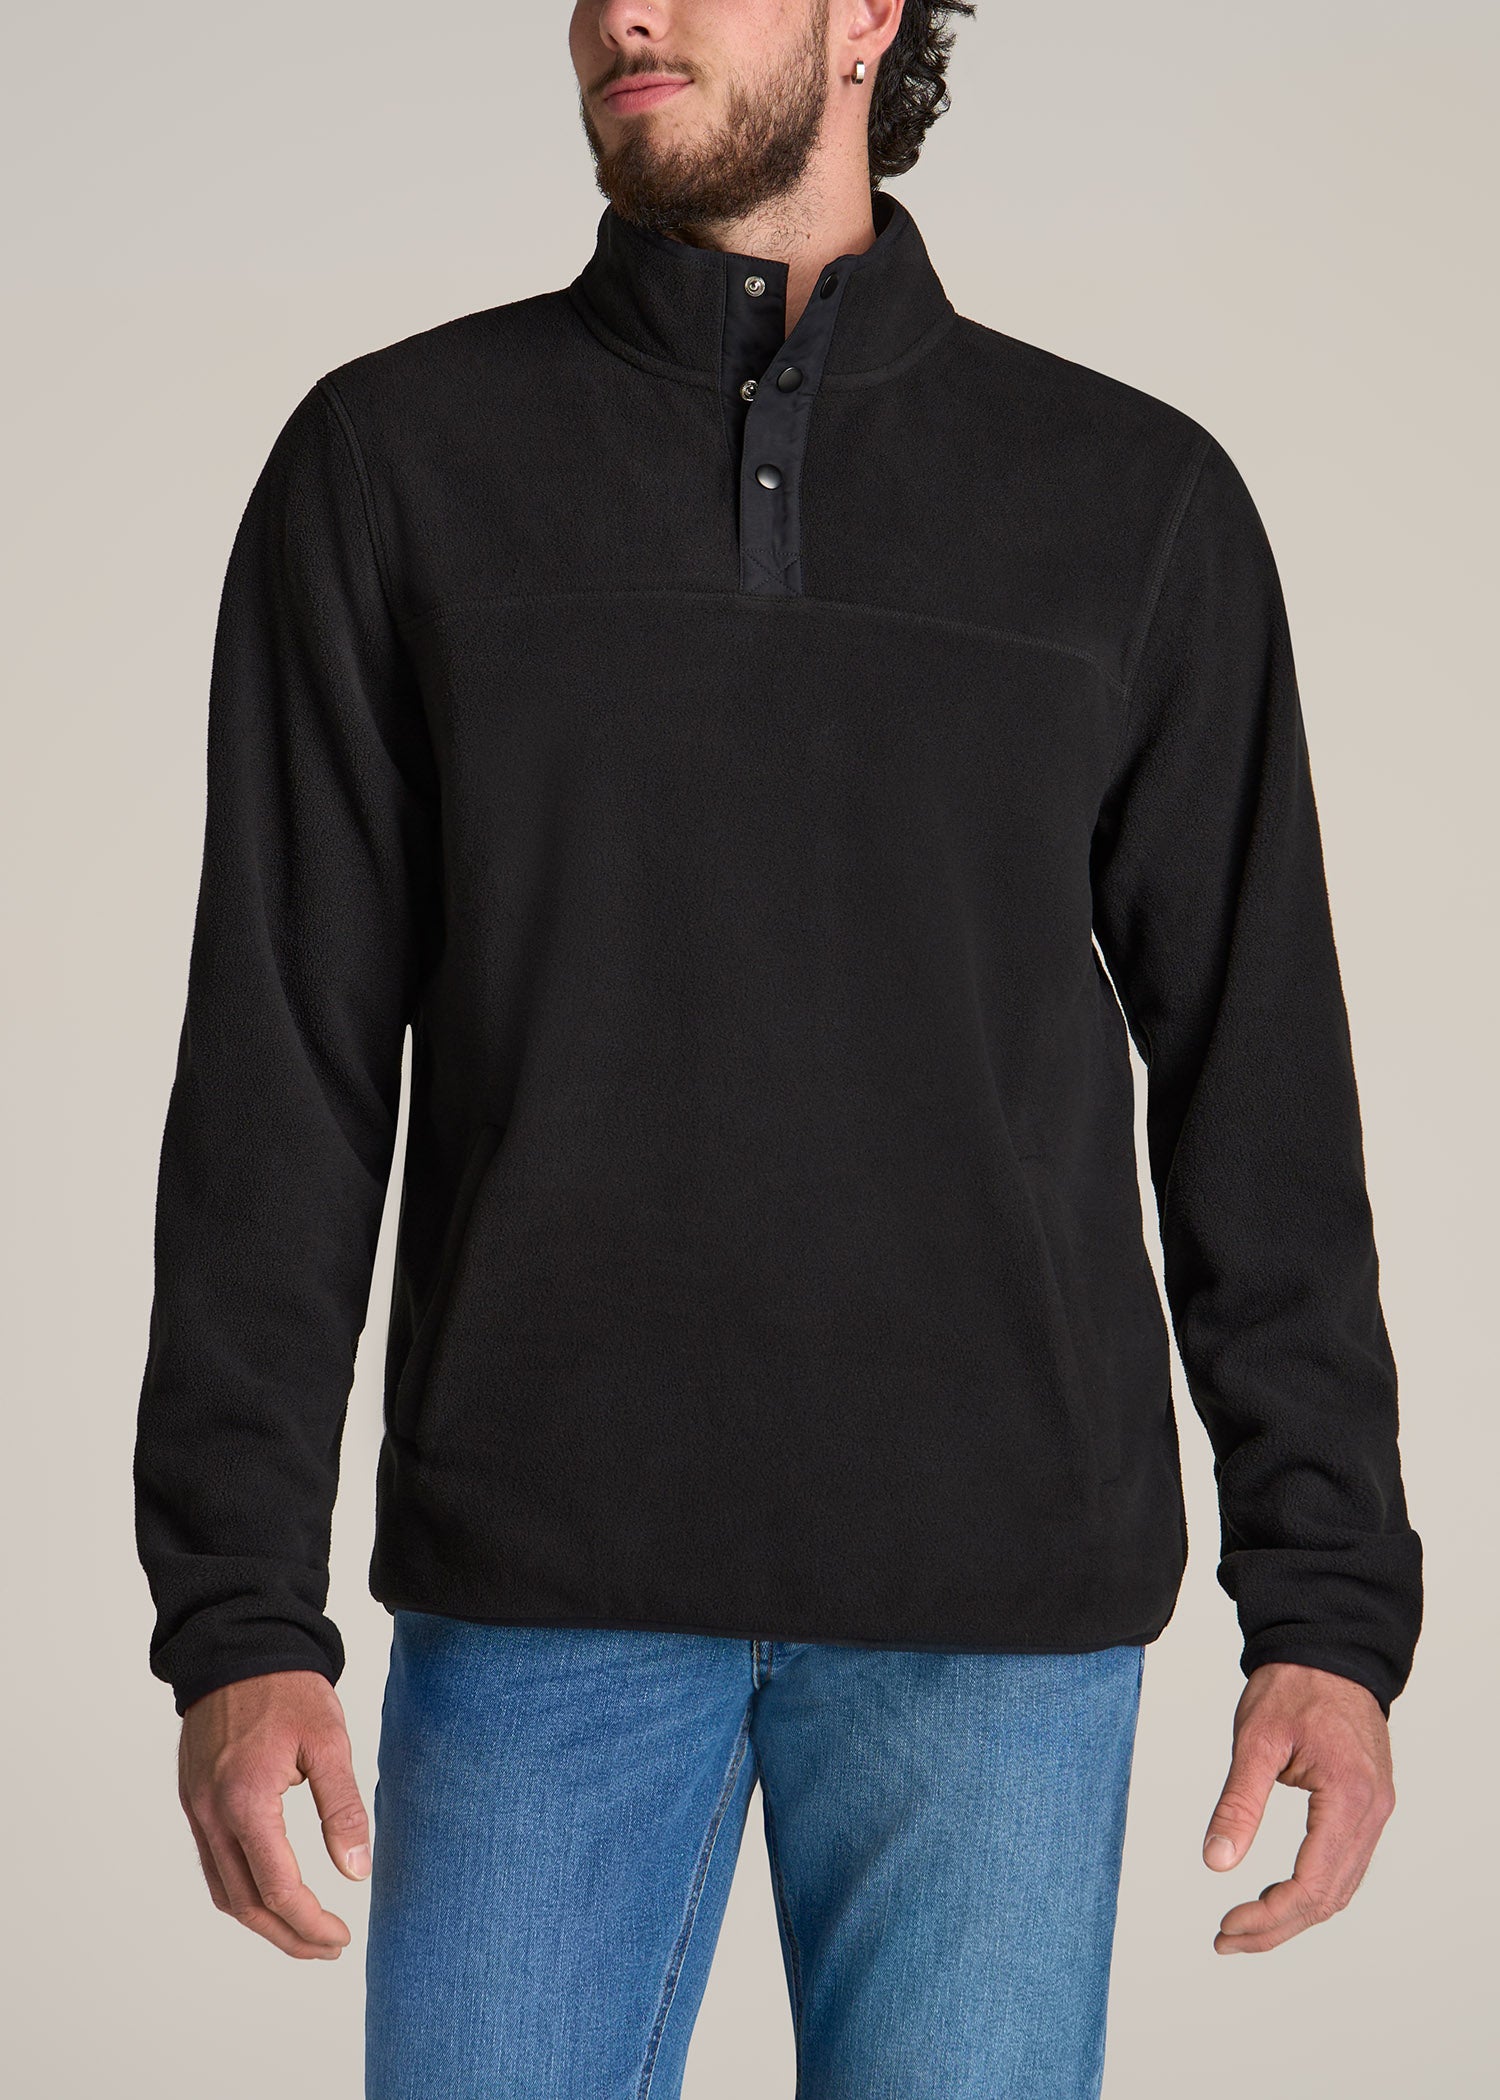 Polar Fleece 3-Snap Pullover Sweatshirt for Tall Men in Black